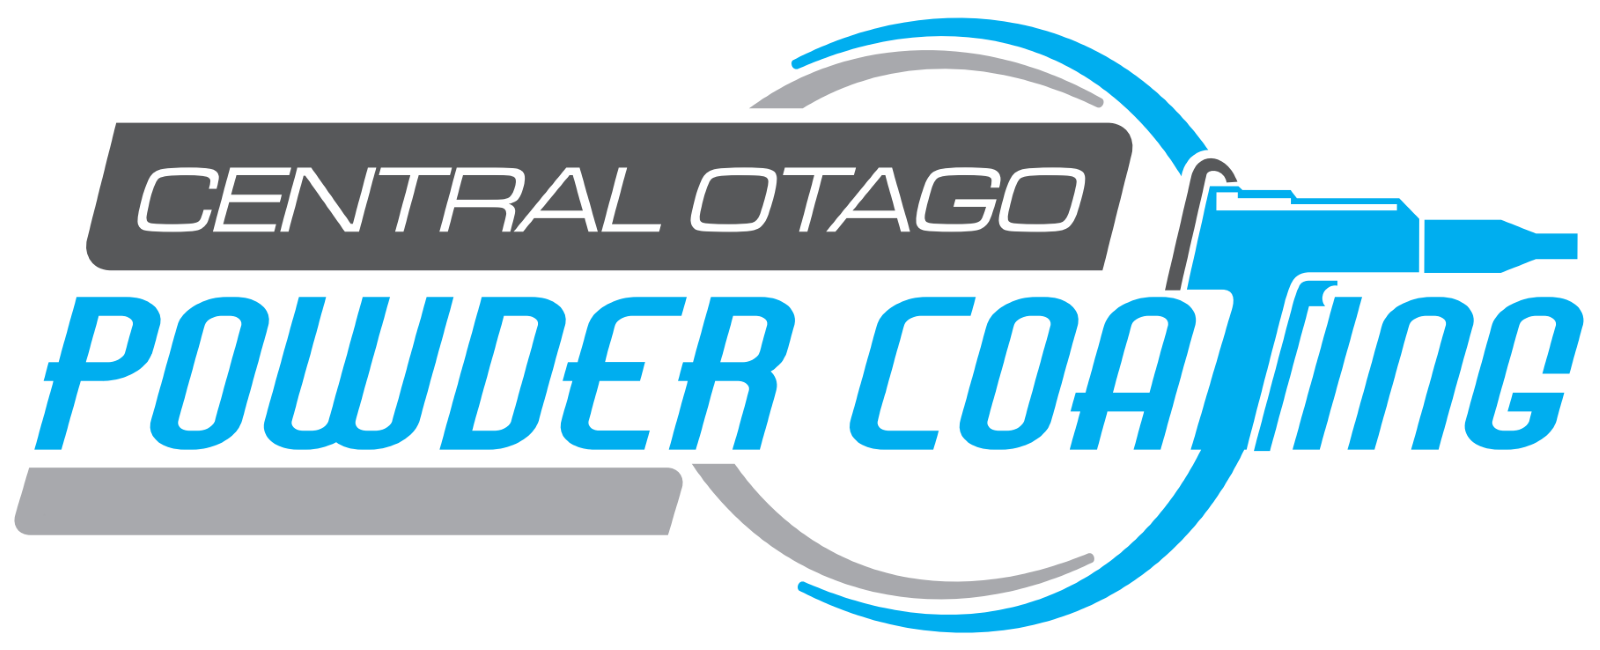 Central Otago Powder Coating & Hydrodipping